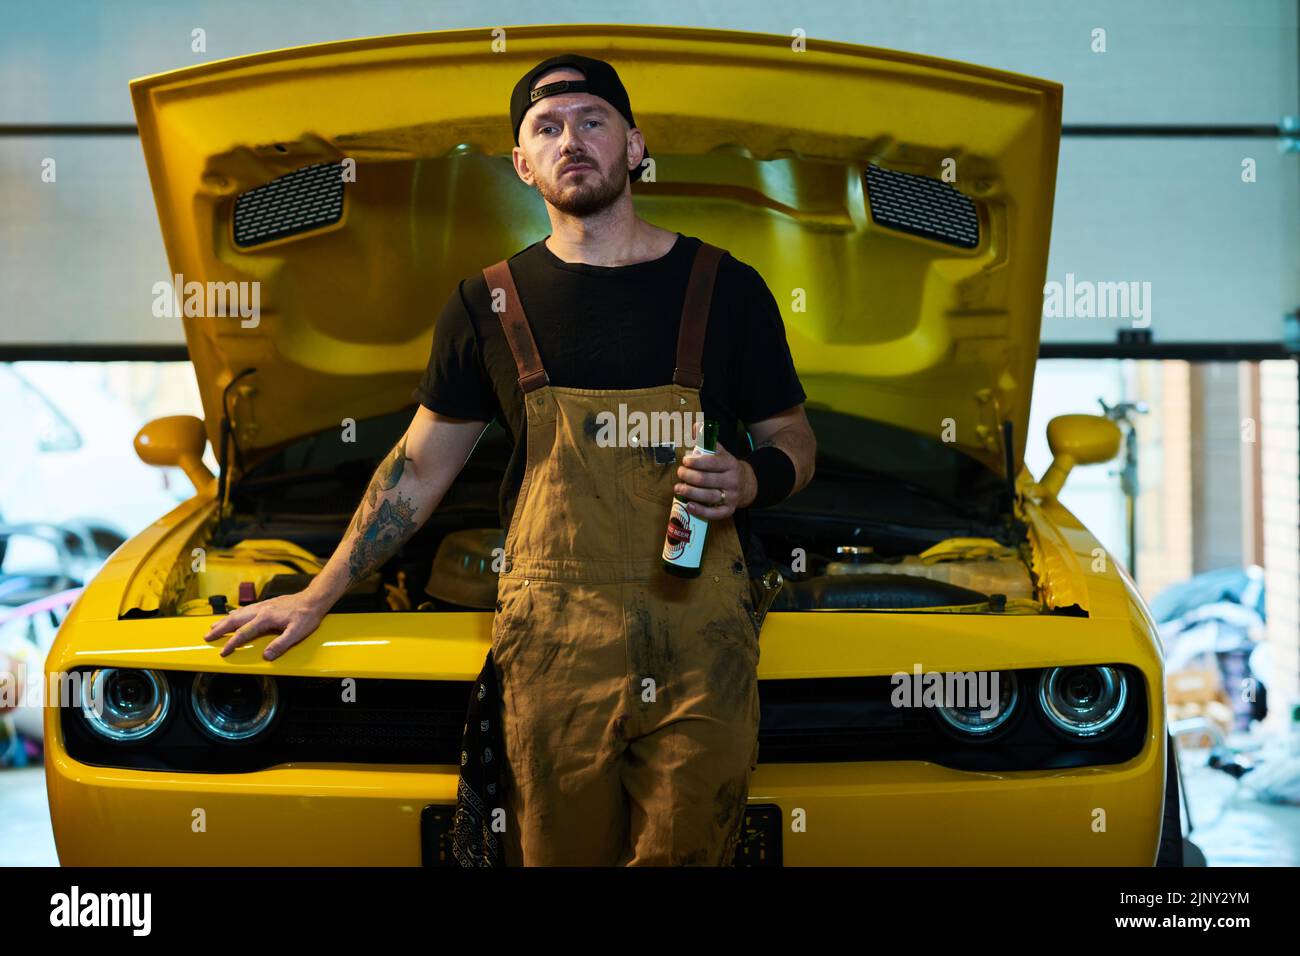 Joven técnico o ingeniero del servicio de mantenimiento con botella de cerveza parada contra coche amarillo con capó abierto en taller Foto de stock